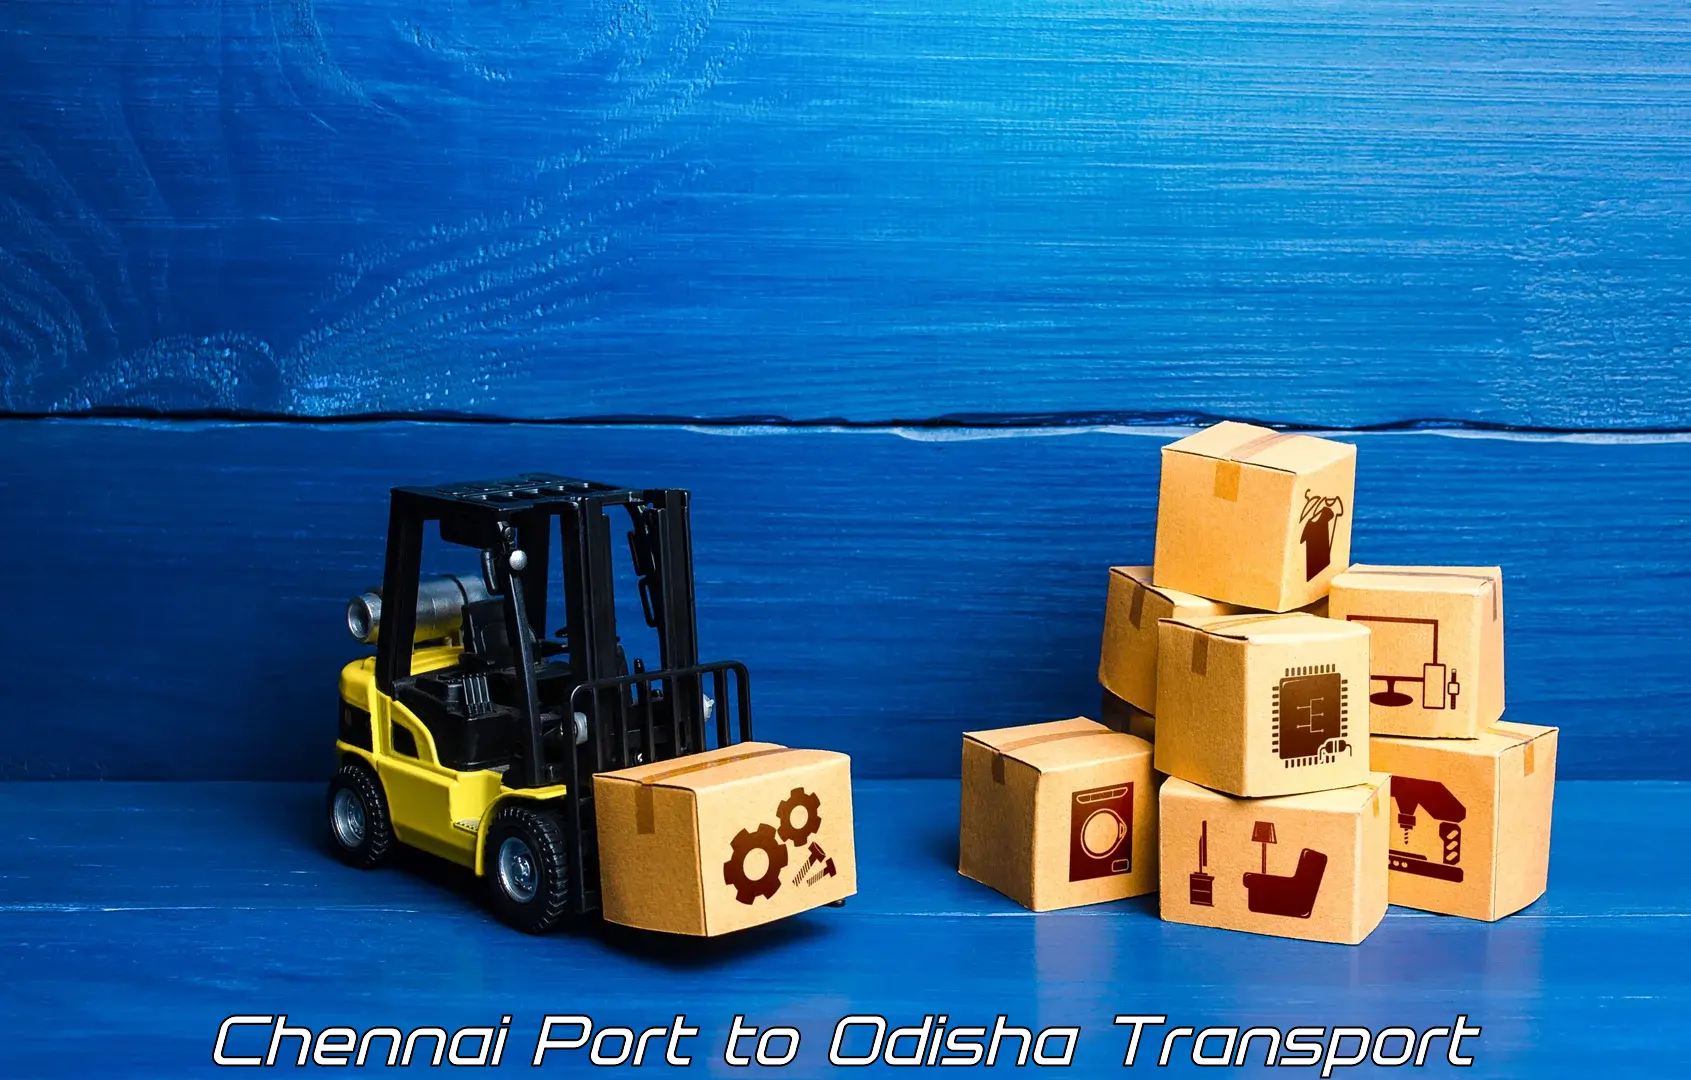 Interstate transport services Chennai Port to Bissam Cuttack